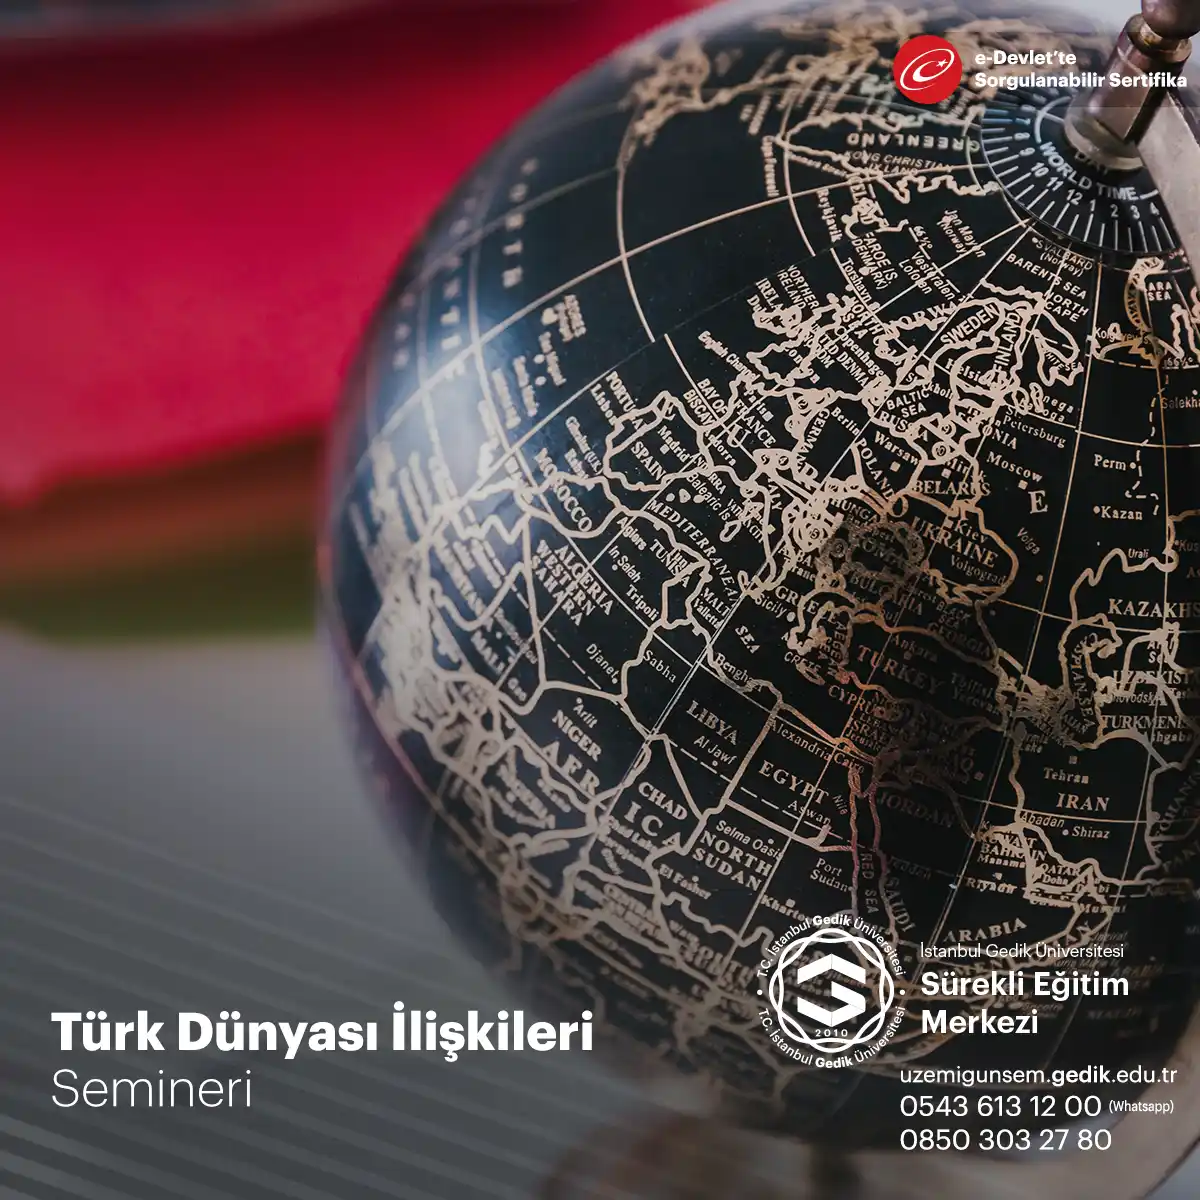 Seminer Türk dünyasının tarihî gelişimi, dil ve kültür bağları, siyasi ilişkiler ve işbirliği olanakları gibi konuları ele alır. 